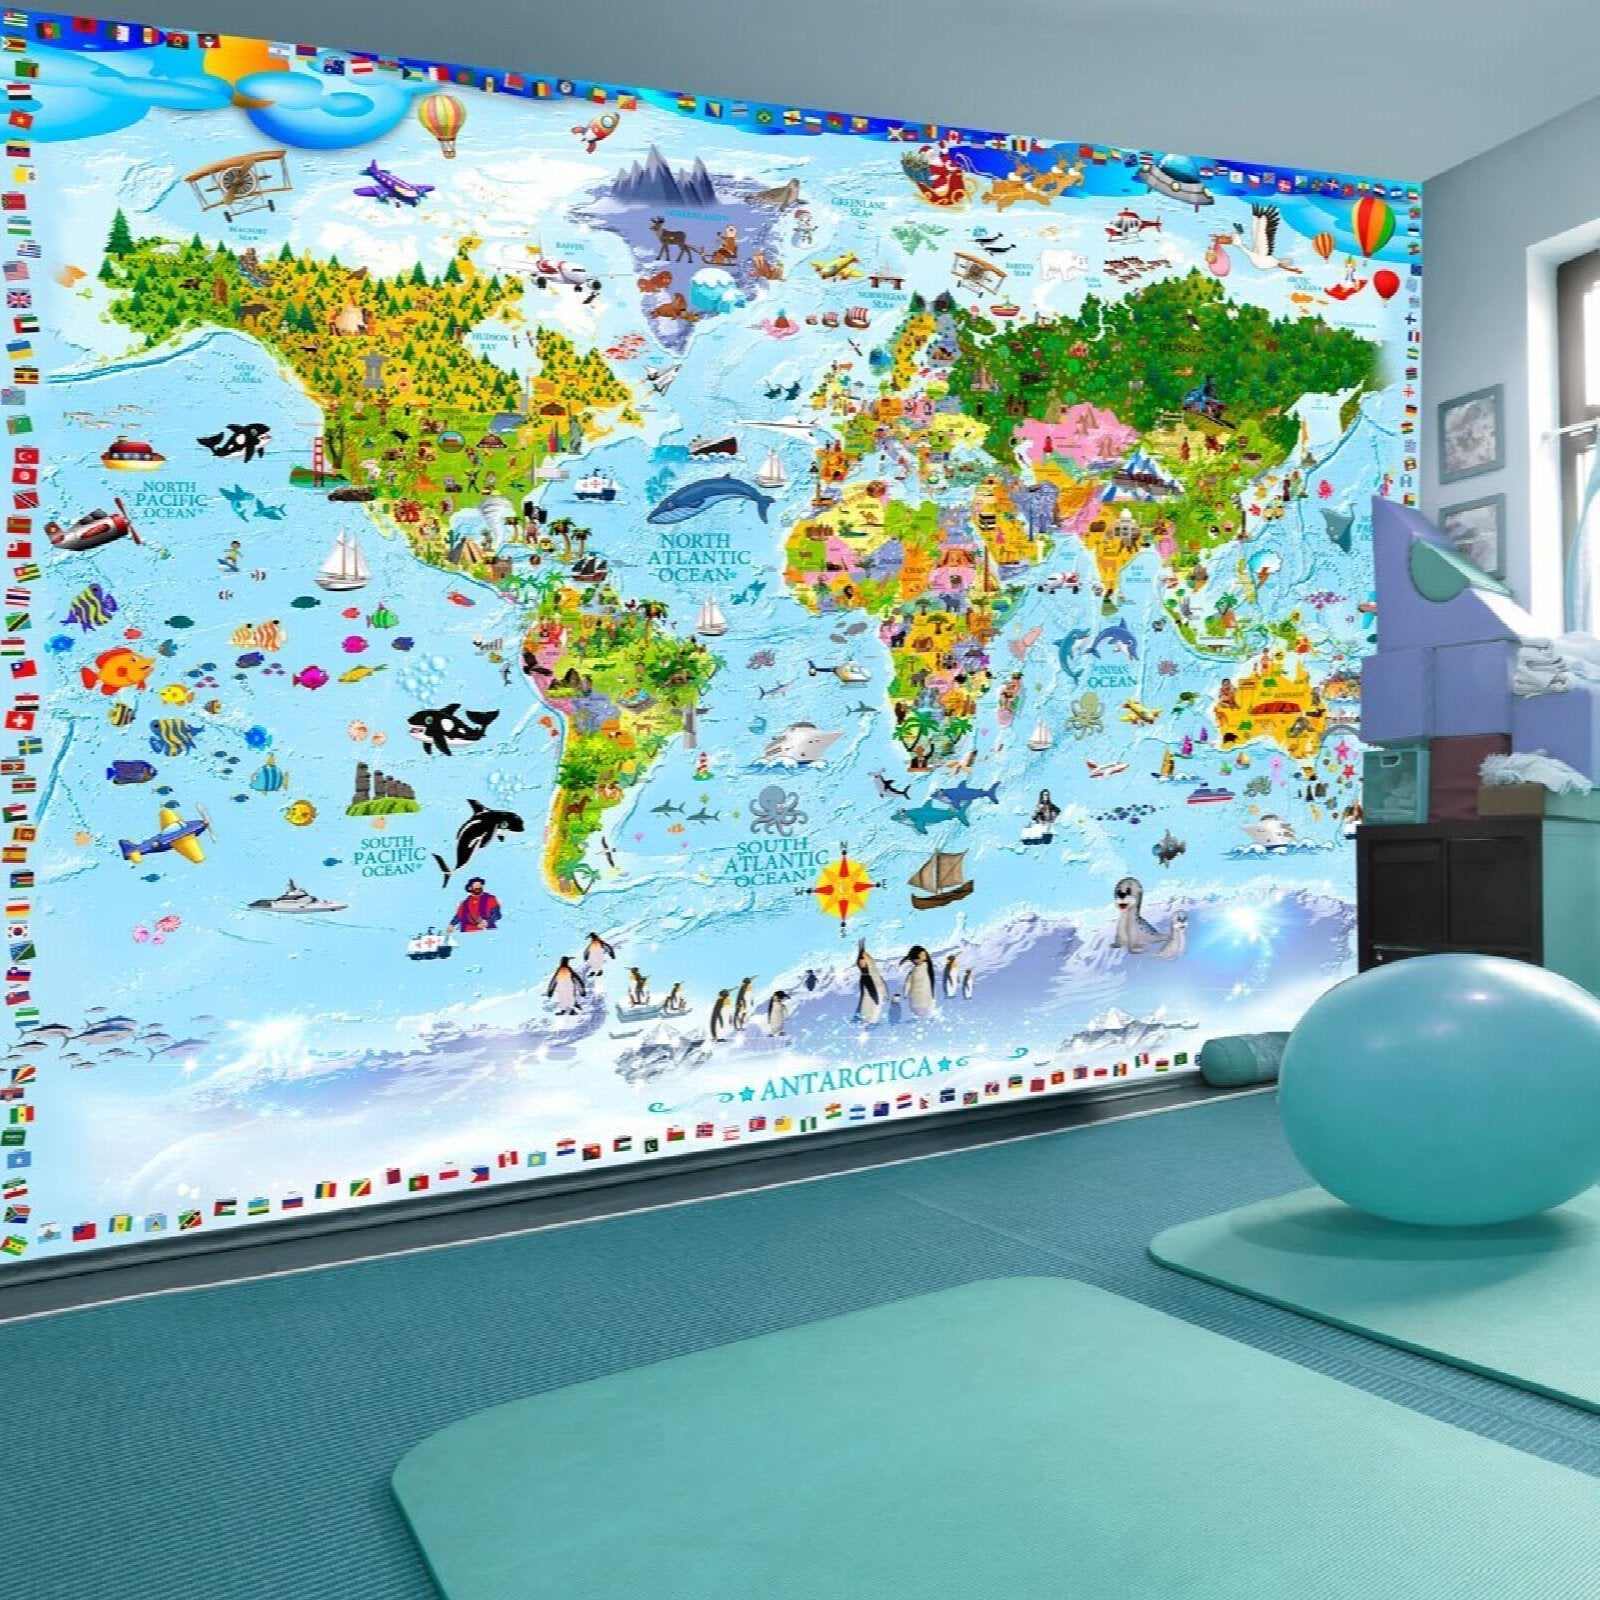 Planisphère mural Géant - world-maps